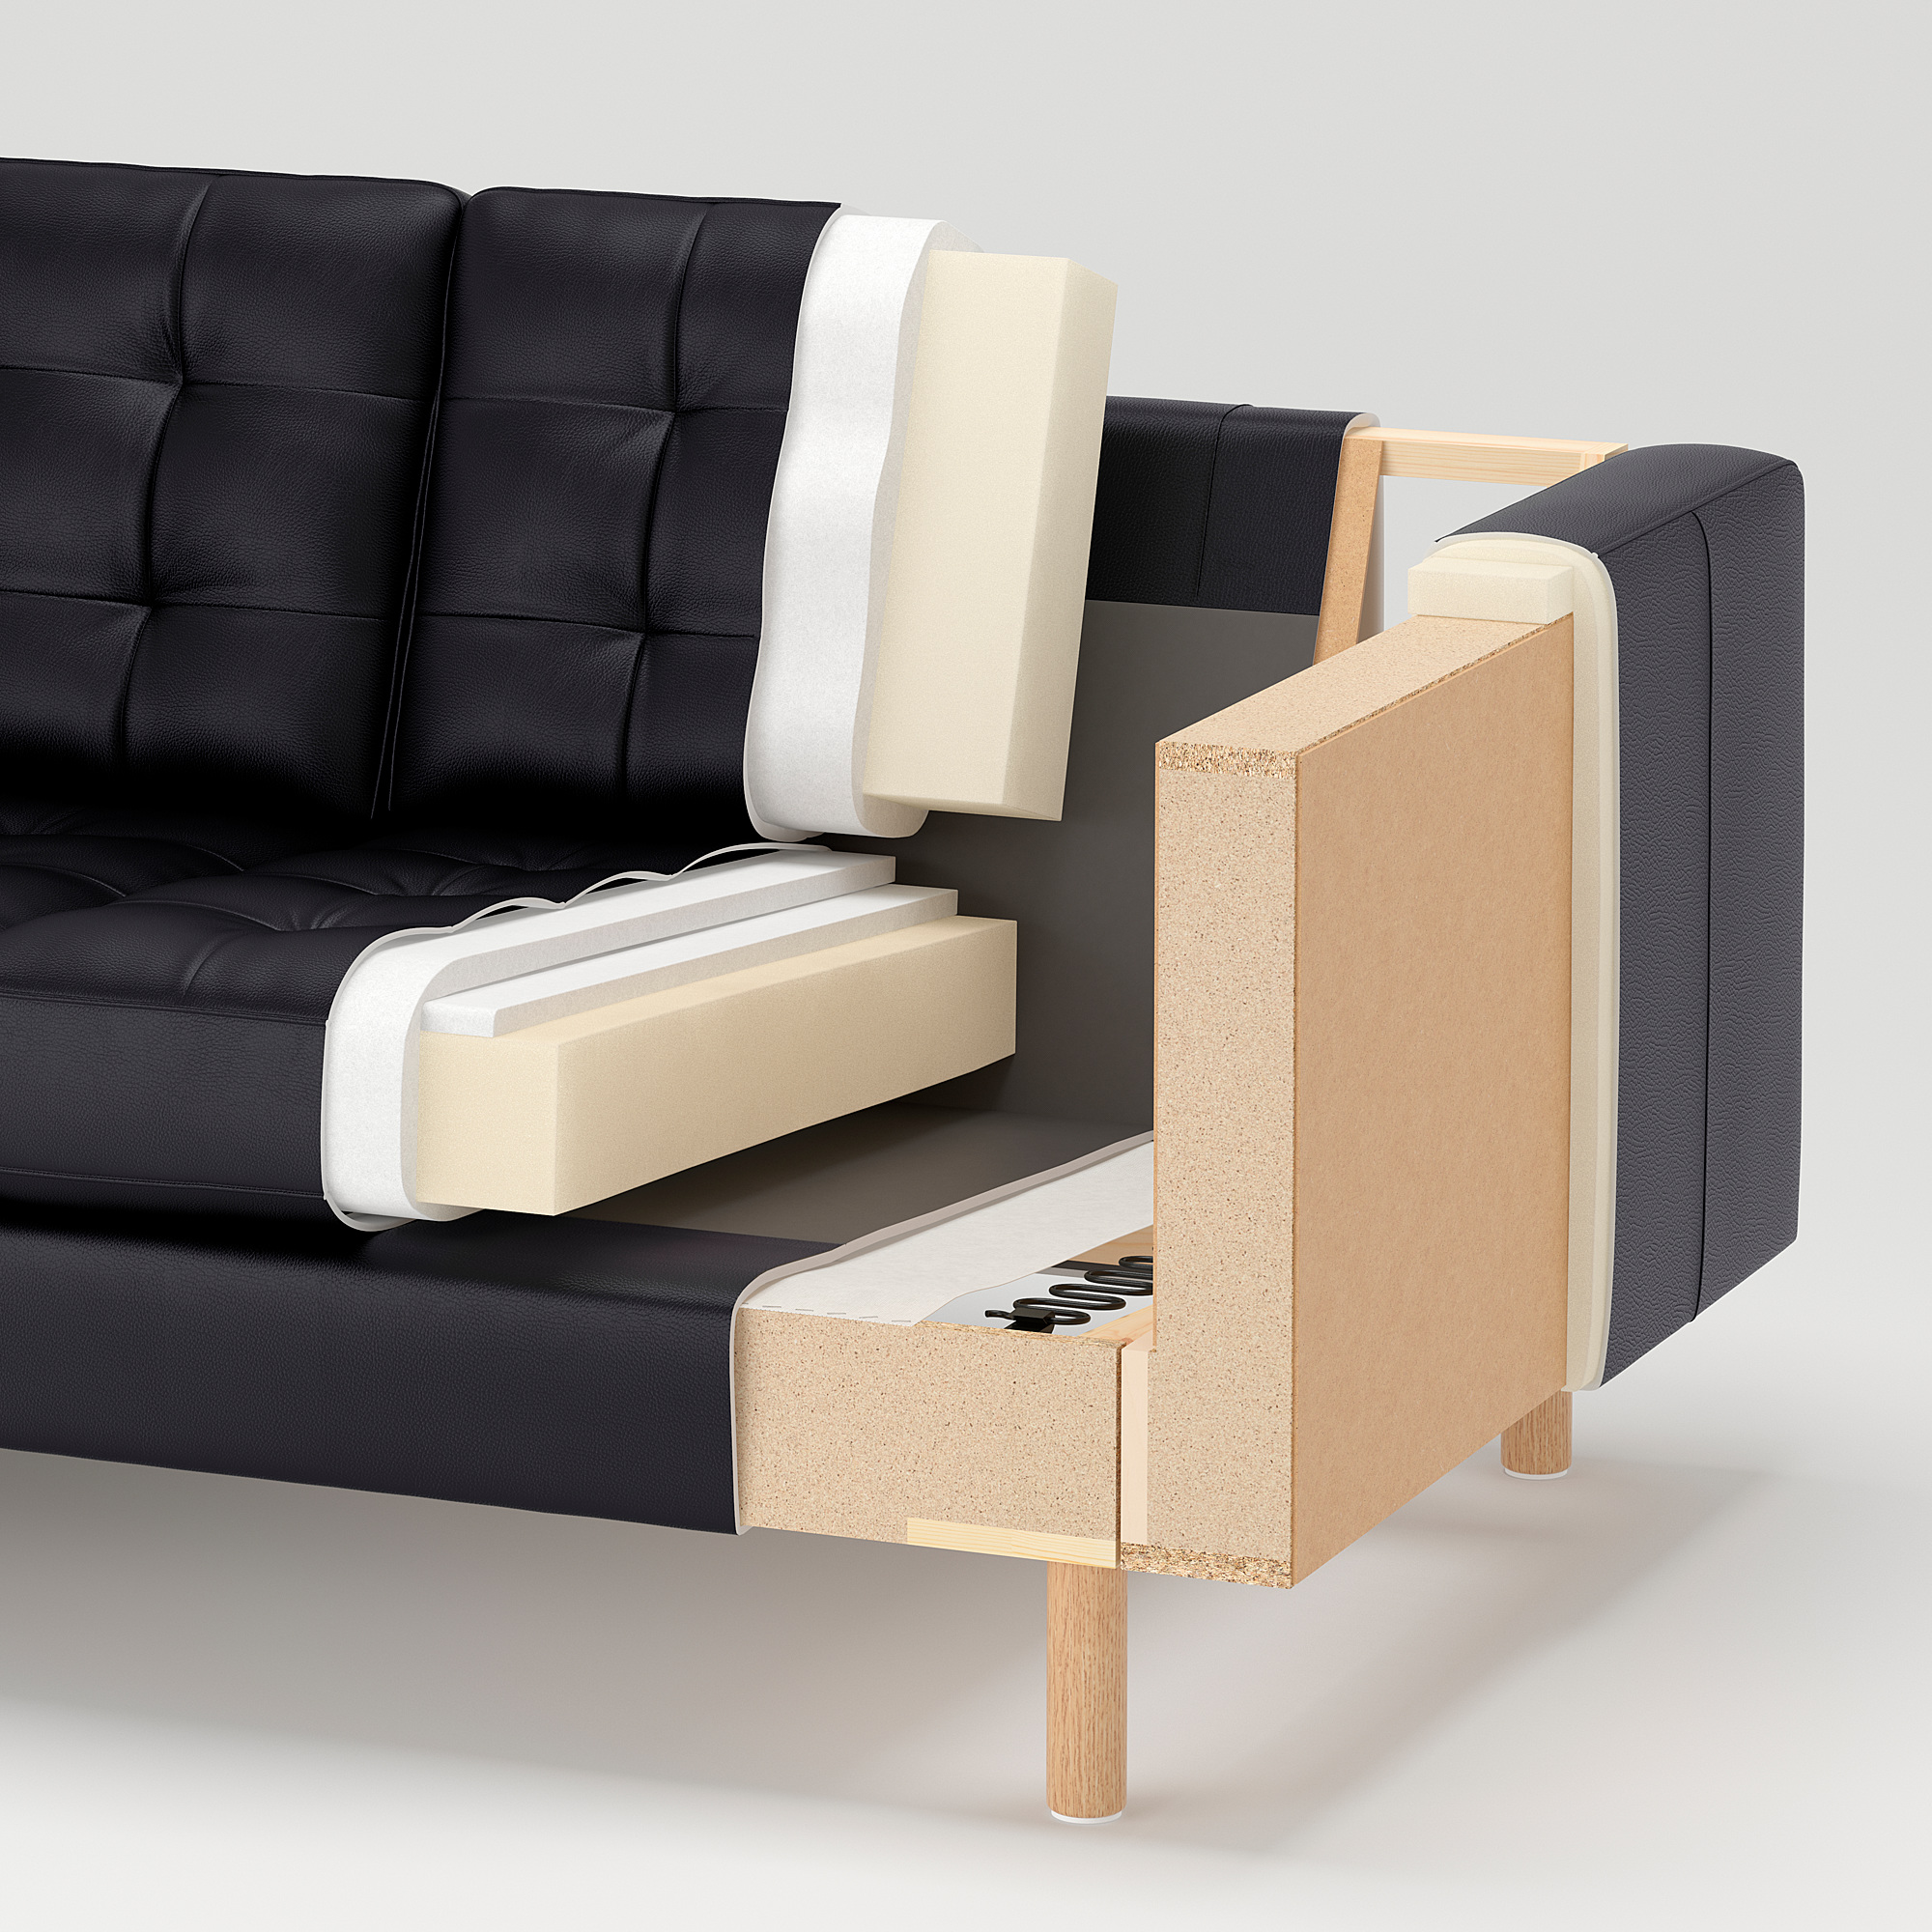 LANDSKRONA two-seat sofa